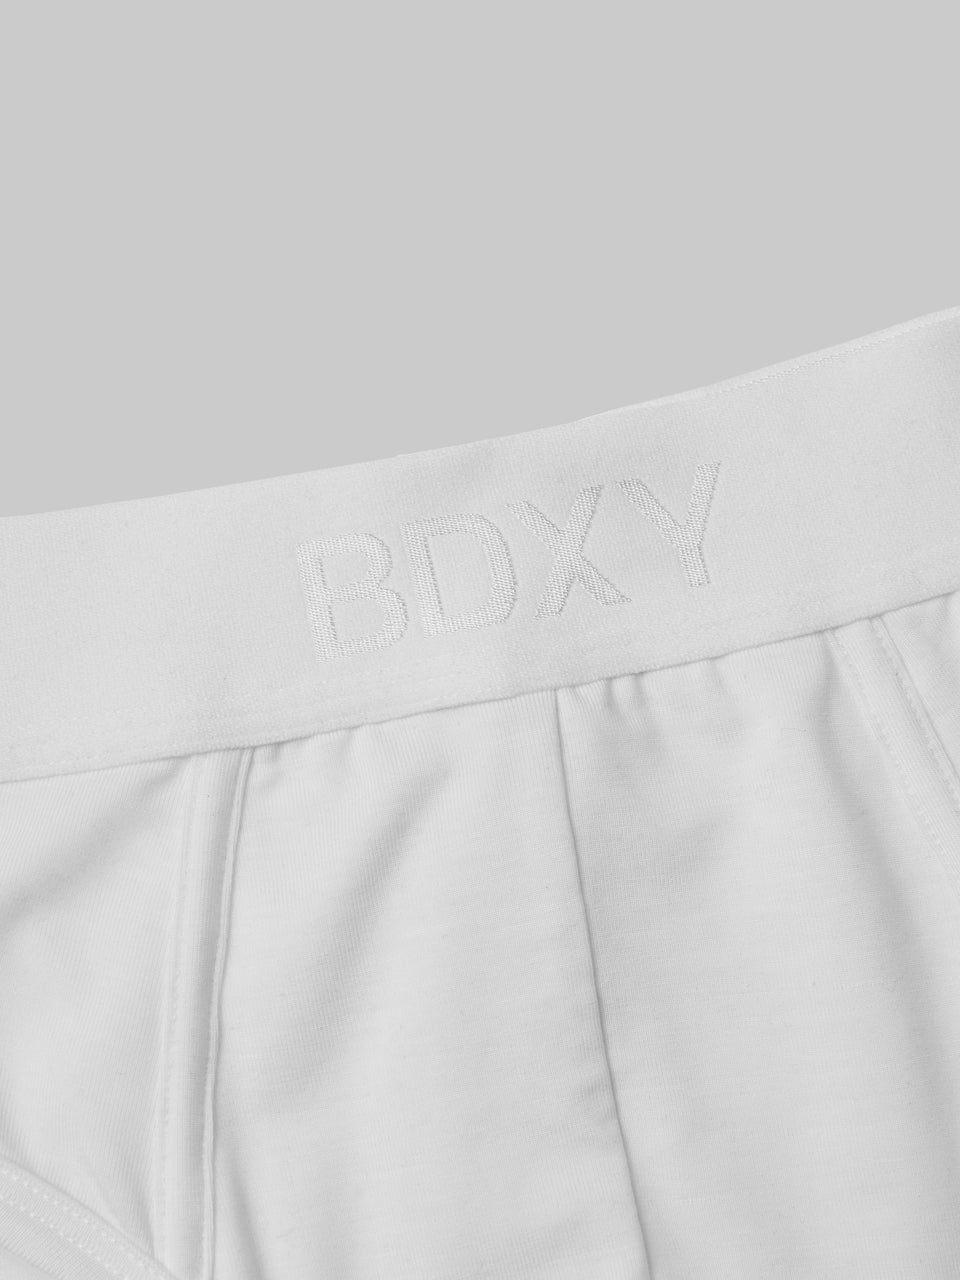 'The Unit' Underwear Brief White